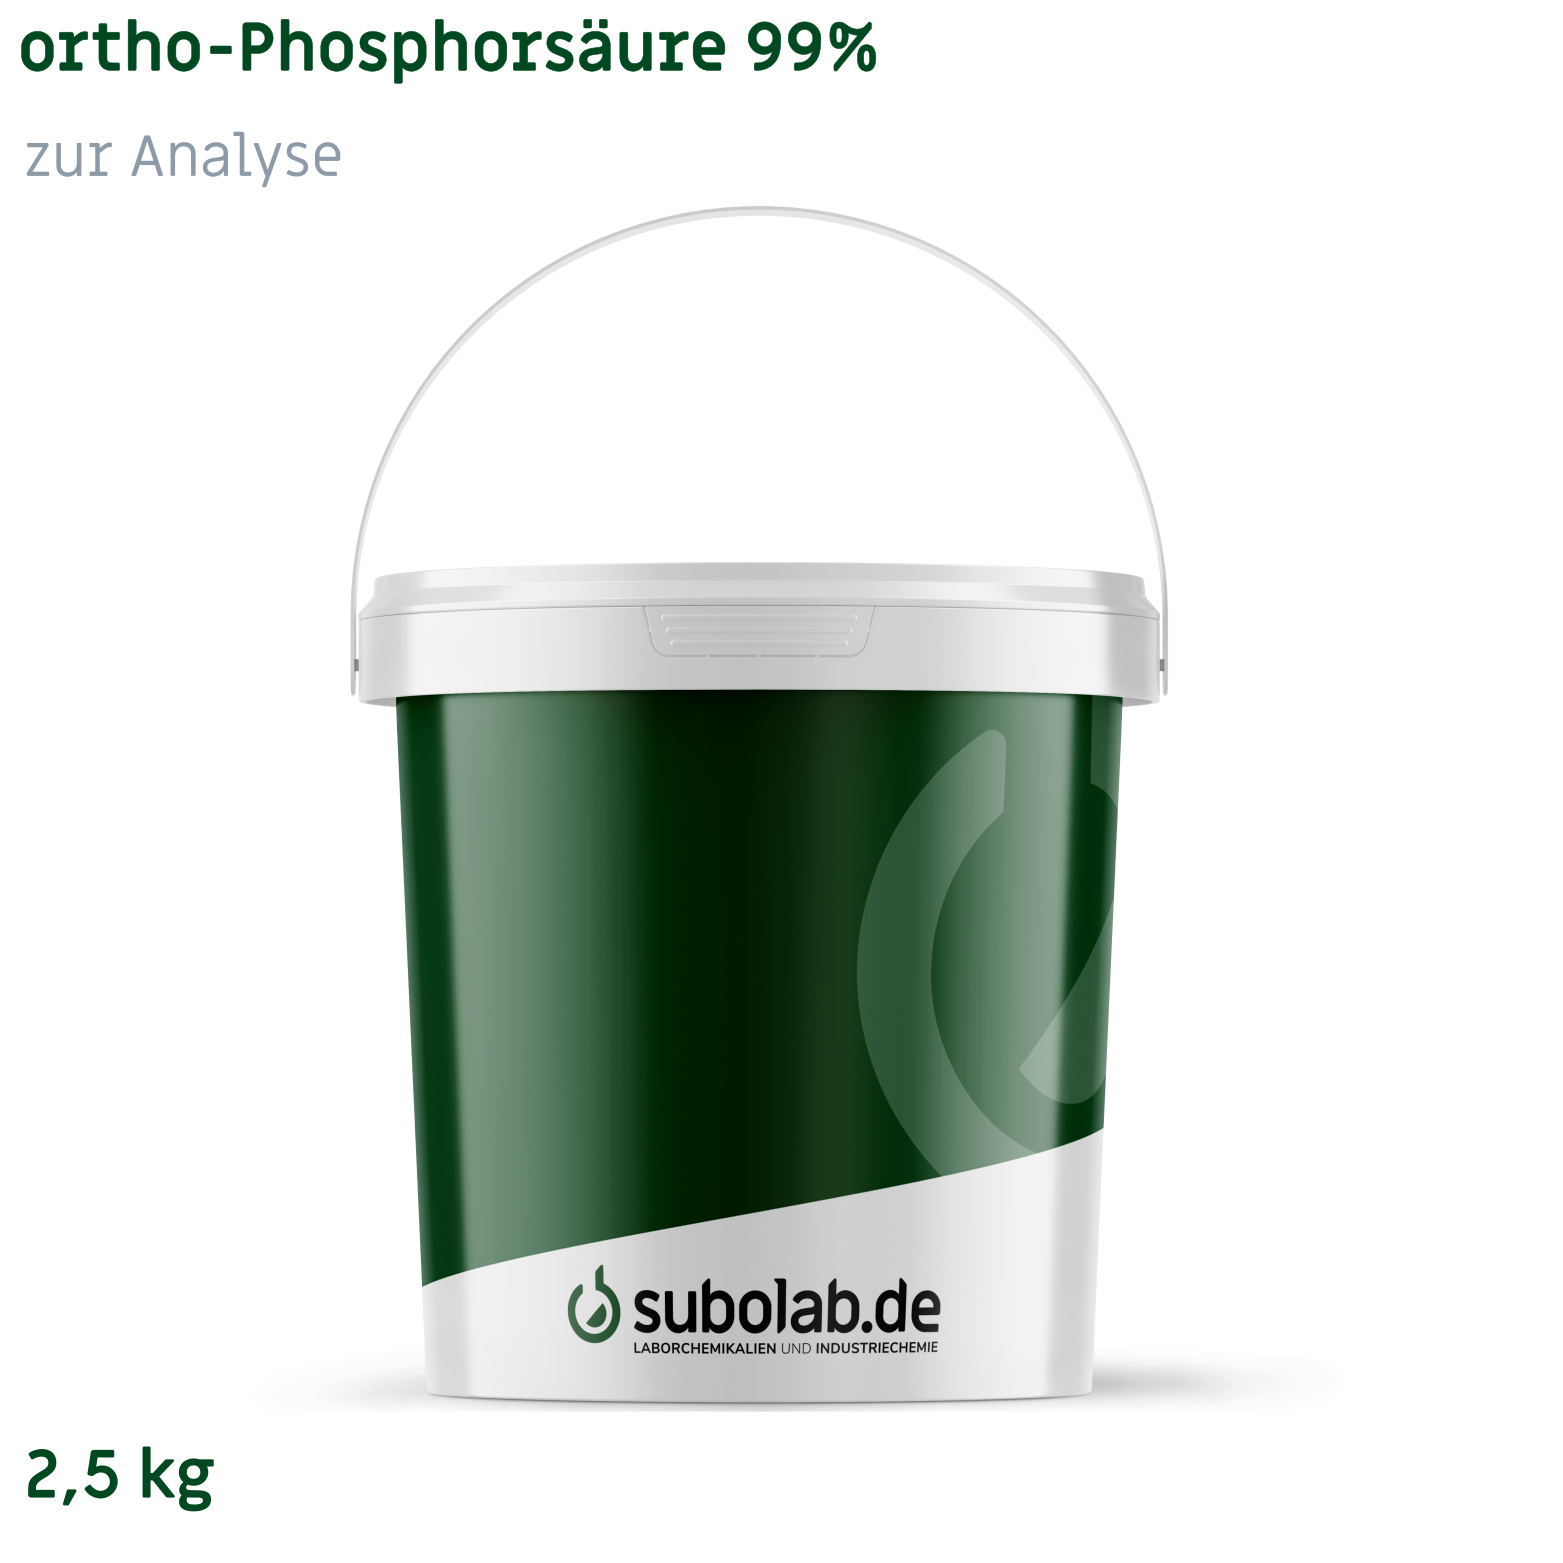 Bild von ortho-Phosphorsäure 99% zur Analyse (2,5 kg)